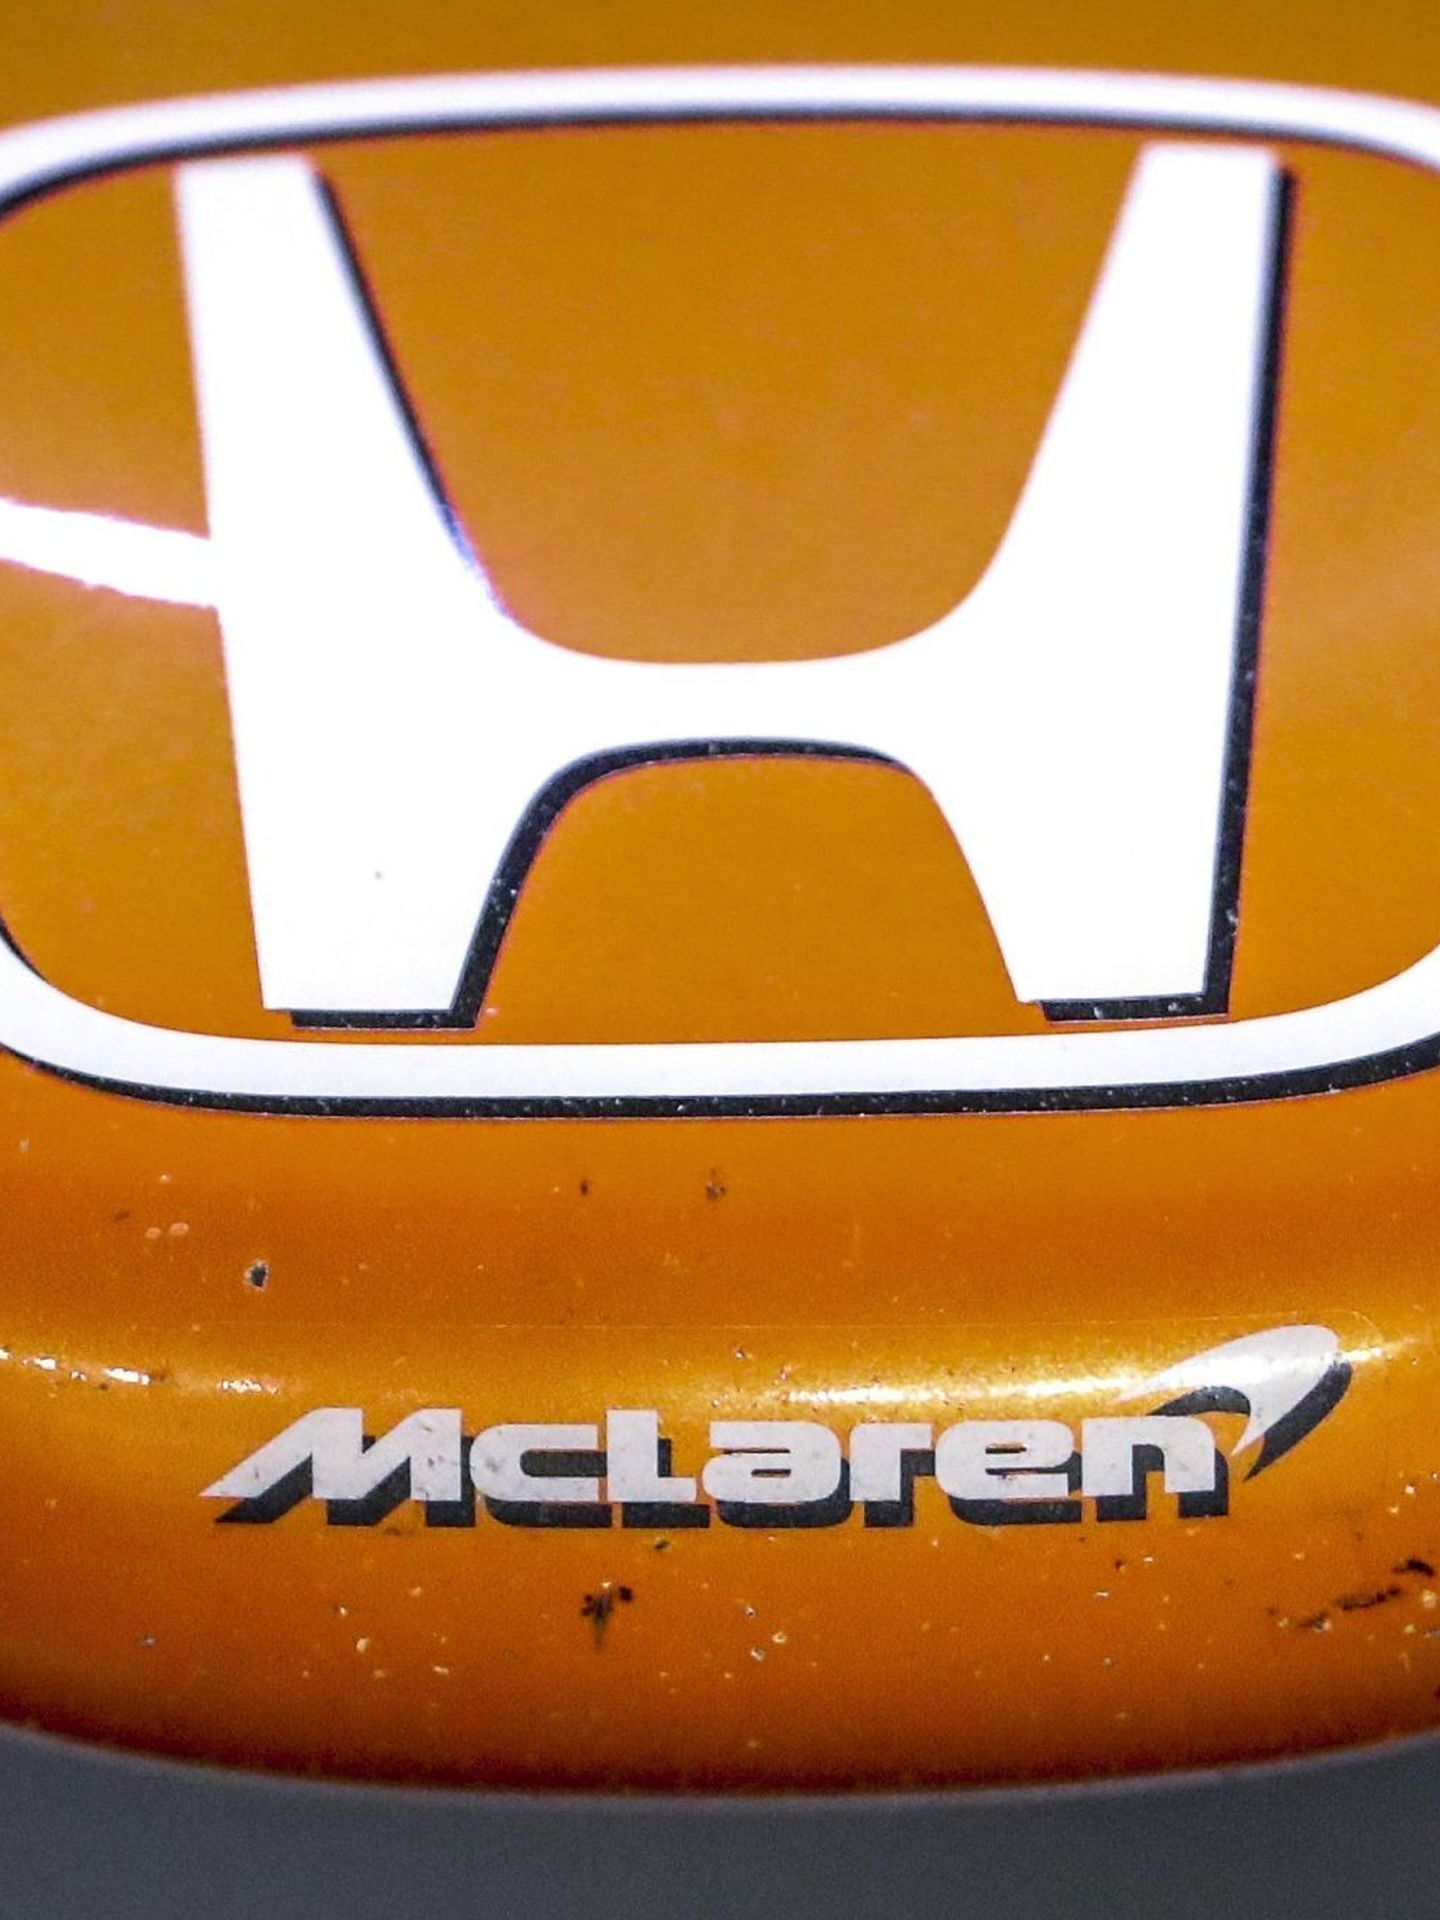 VT037 SINGAPUR (SINGAPUR) 15 09 2017.- Vista en detalle del monoplaza del piloto español de Fórmula Uno Fernando Alonso, de la escudería McLaren-Honda antes del comienzo de la segunda sesión de entrenamiento del circuito urbano de Marina Bay (Singapur) hoy, 15 de septiembre de 2017. La escudería inglesa McLaren ha anunciado que termina su relación con el fabricante japonés de motores Honda y que a partir de la próxima temporada utilizará motores de la francesa Renault. EFE Diego Azubel